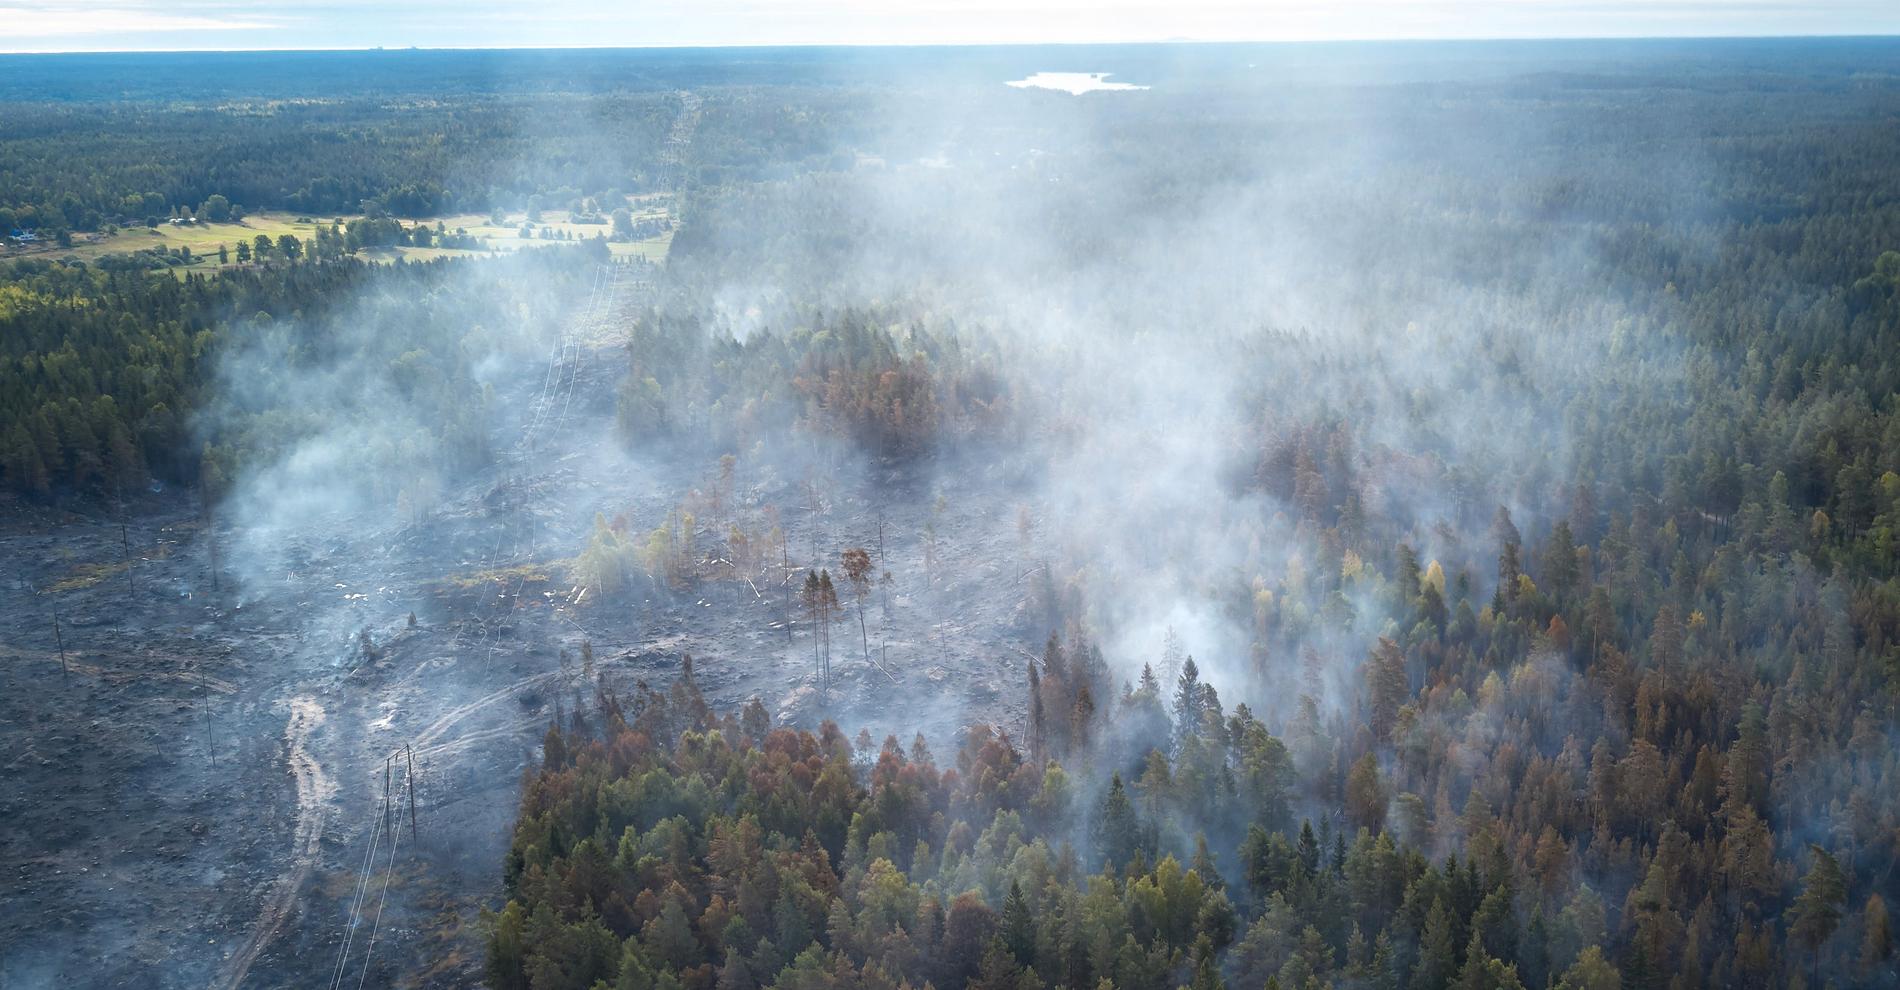 Skogsbranden i trakterna kring Mo, Helgum, i Sollefteå kommun, var tillfälligt under kontroll på söndagskvällen. Bilden är tagen vid en annan skogsbrand.